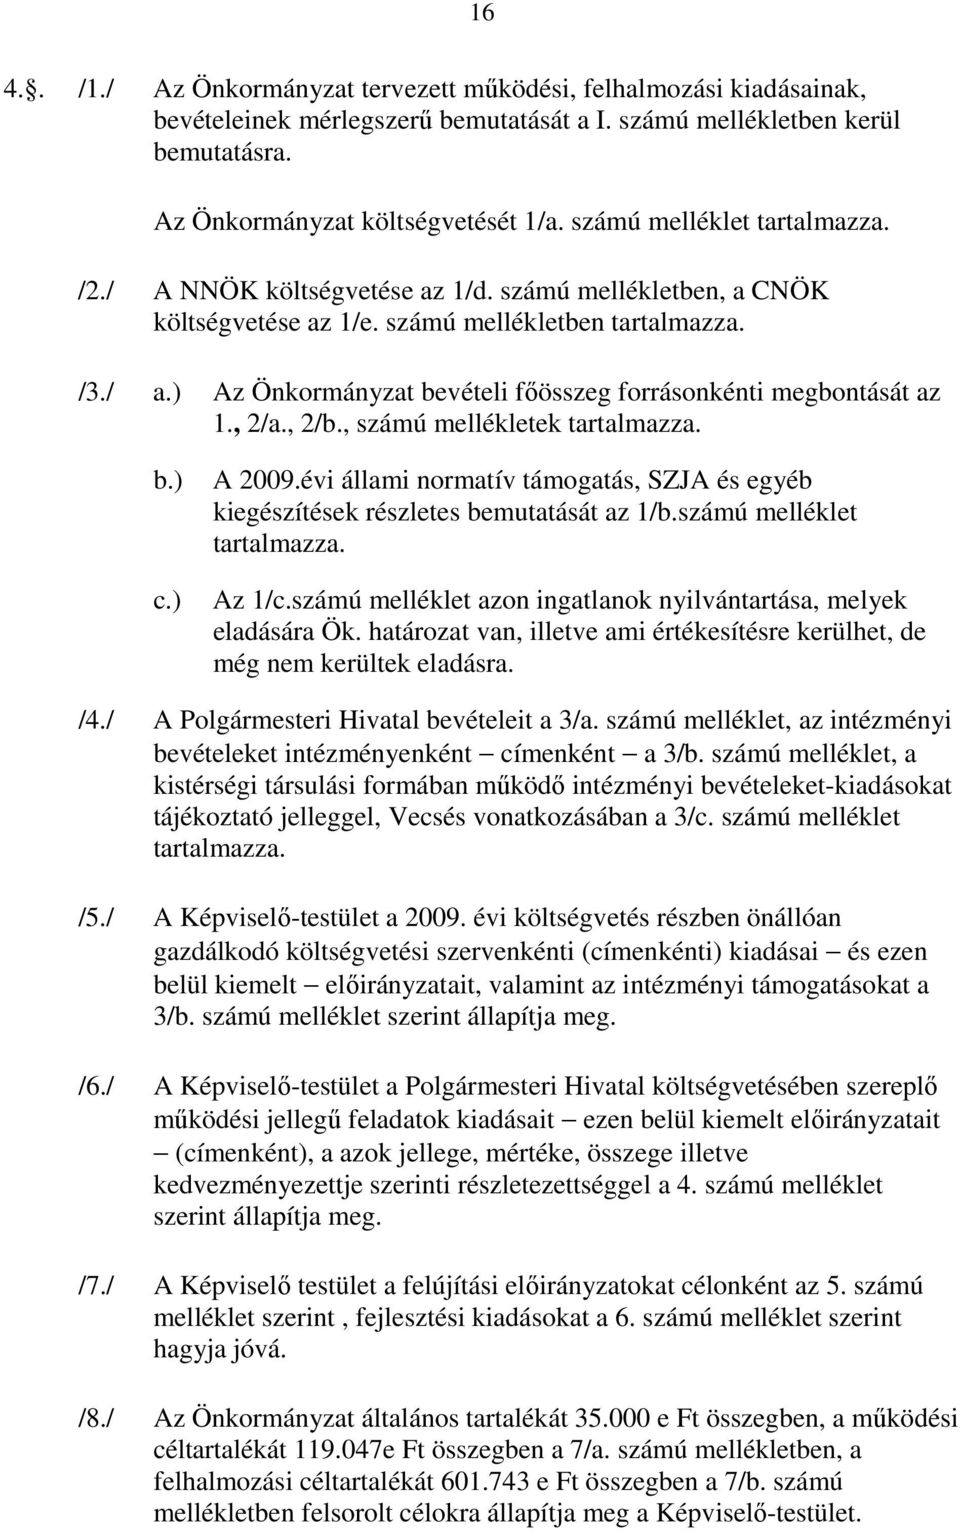 ) Az Önkormányzat bevételi fıösszeg forrásonkénti megbontását az 1., 2/a., 2/b., számú mellékletek tartalmazza. b.) c.) A 2009.